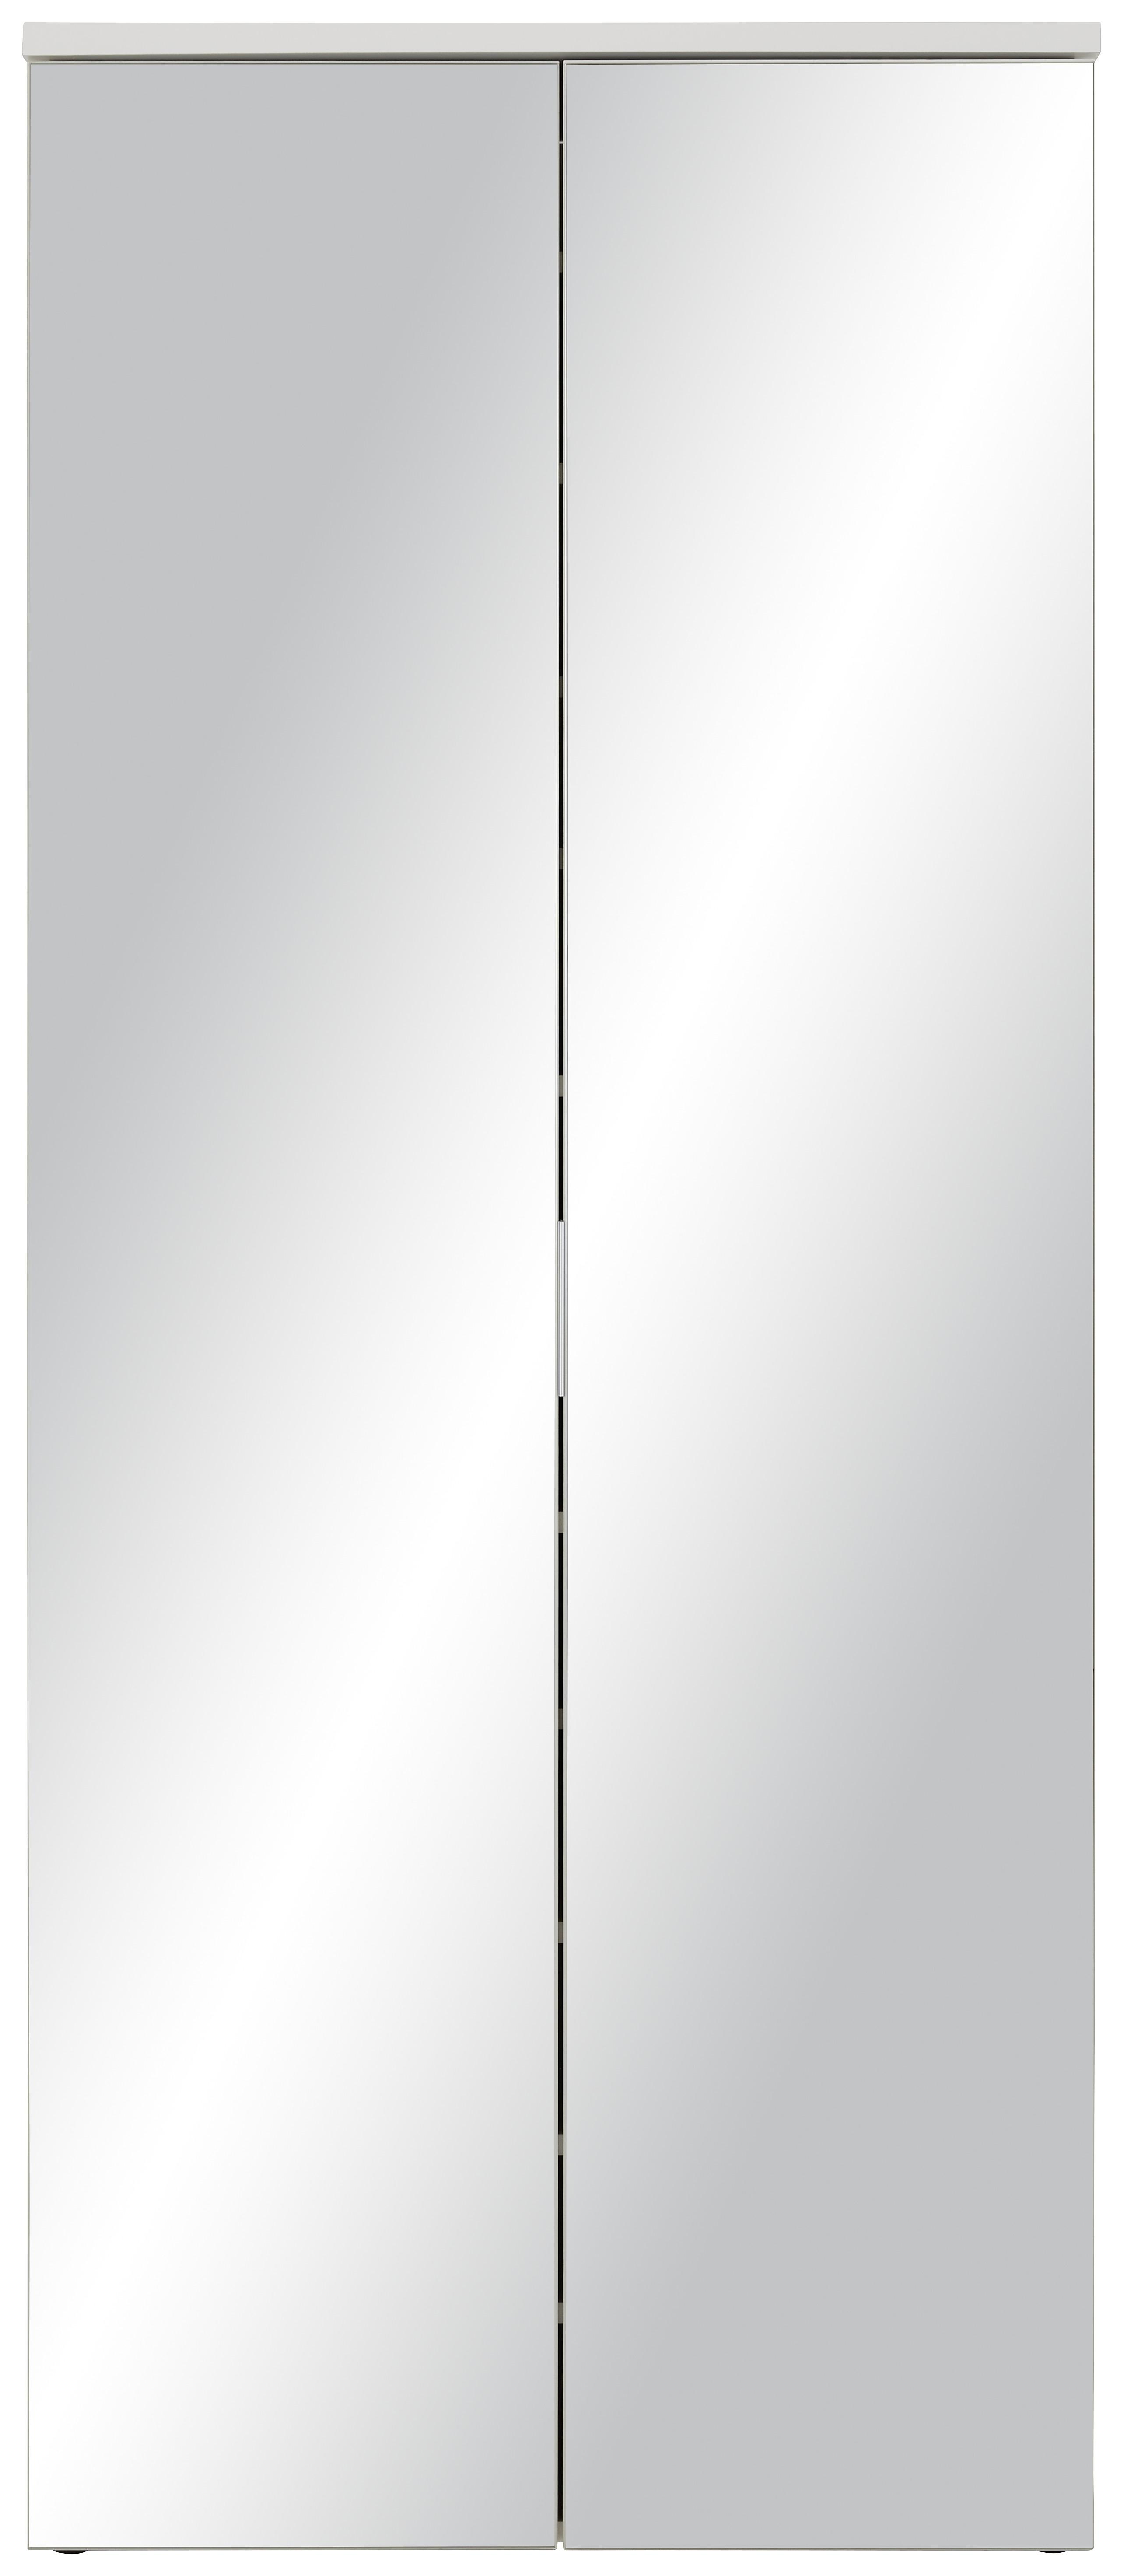 Omara Za Čevlje Lincoln 4 - bela/srebrna, Moderno, steklo/leseni material (80/190/35cm) - Modern Living